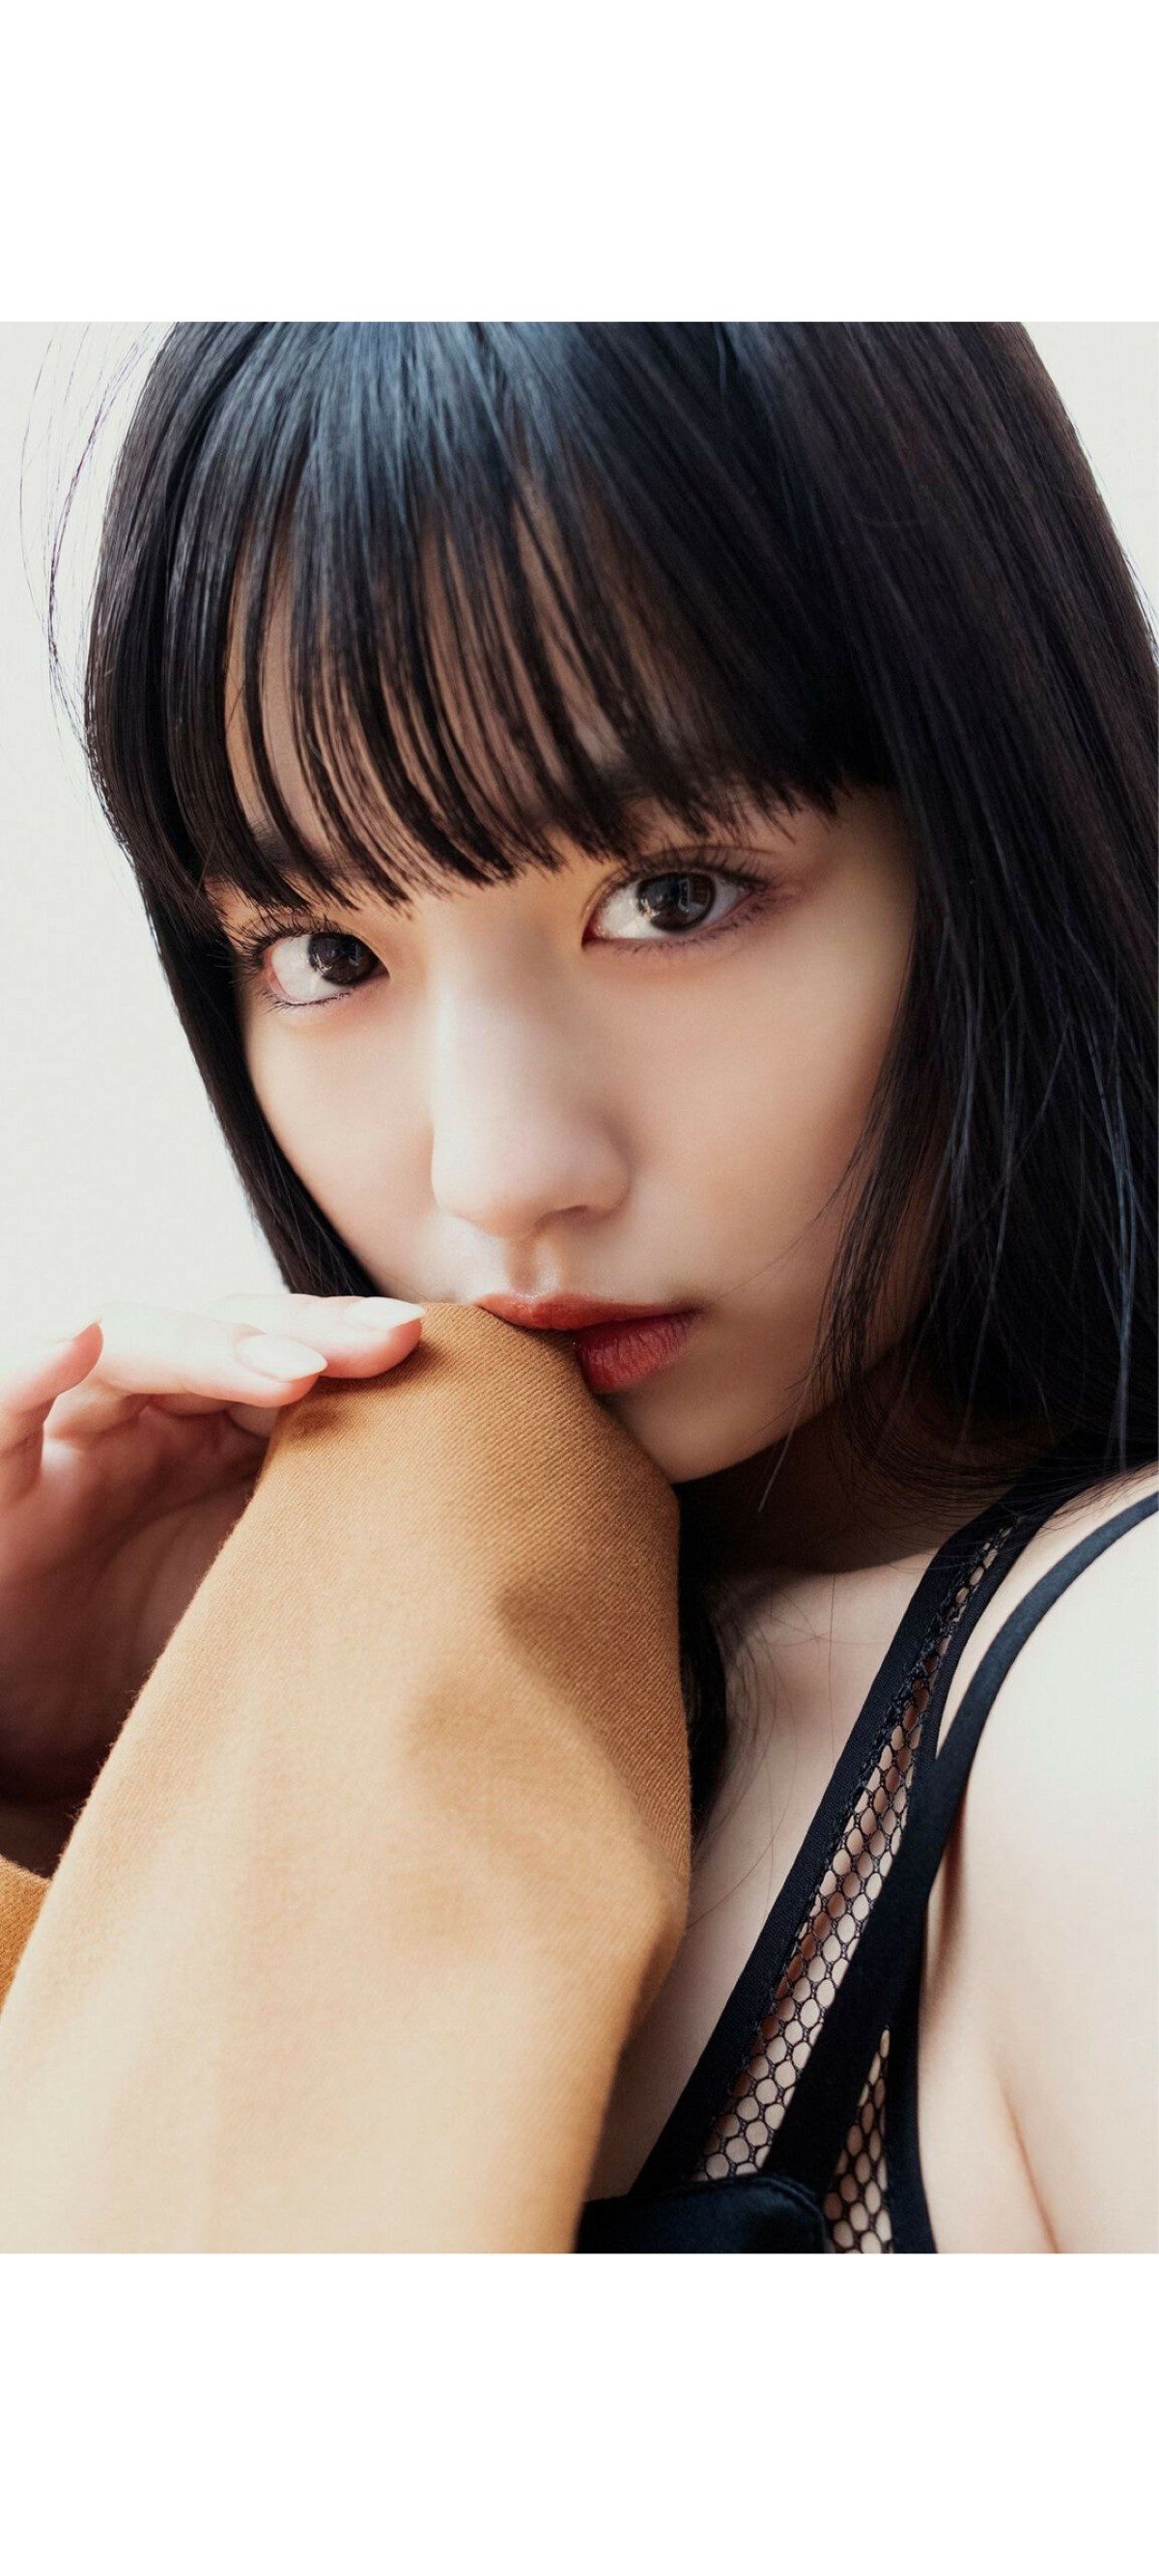 Weekly Photobook 2020 12 07 Noa Tsurushima 鶴嶋乃愛 A natural actress 生まれながらにして女優 0011 3160450611.jpg